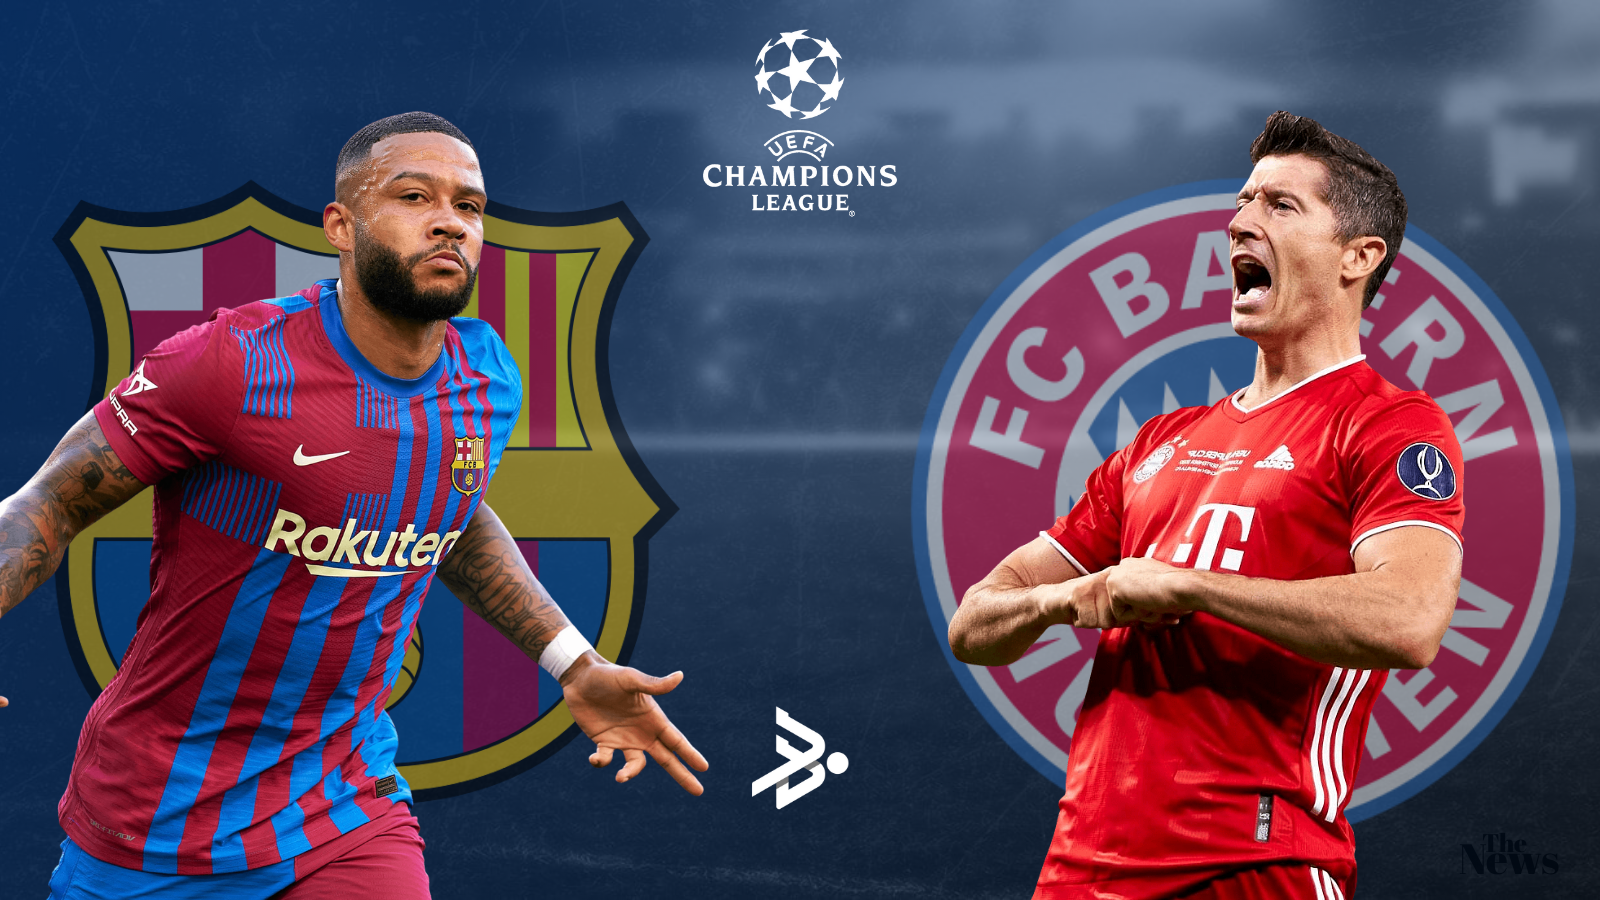 Barcelona y Bayern München, el gran duelo de la jornada en la UEFA Champions League. Foto: Imago.